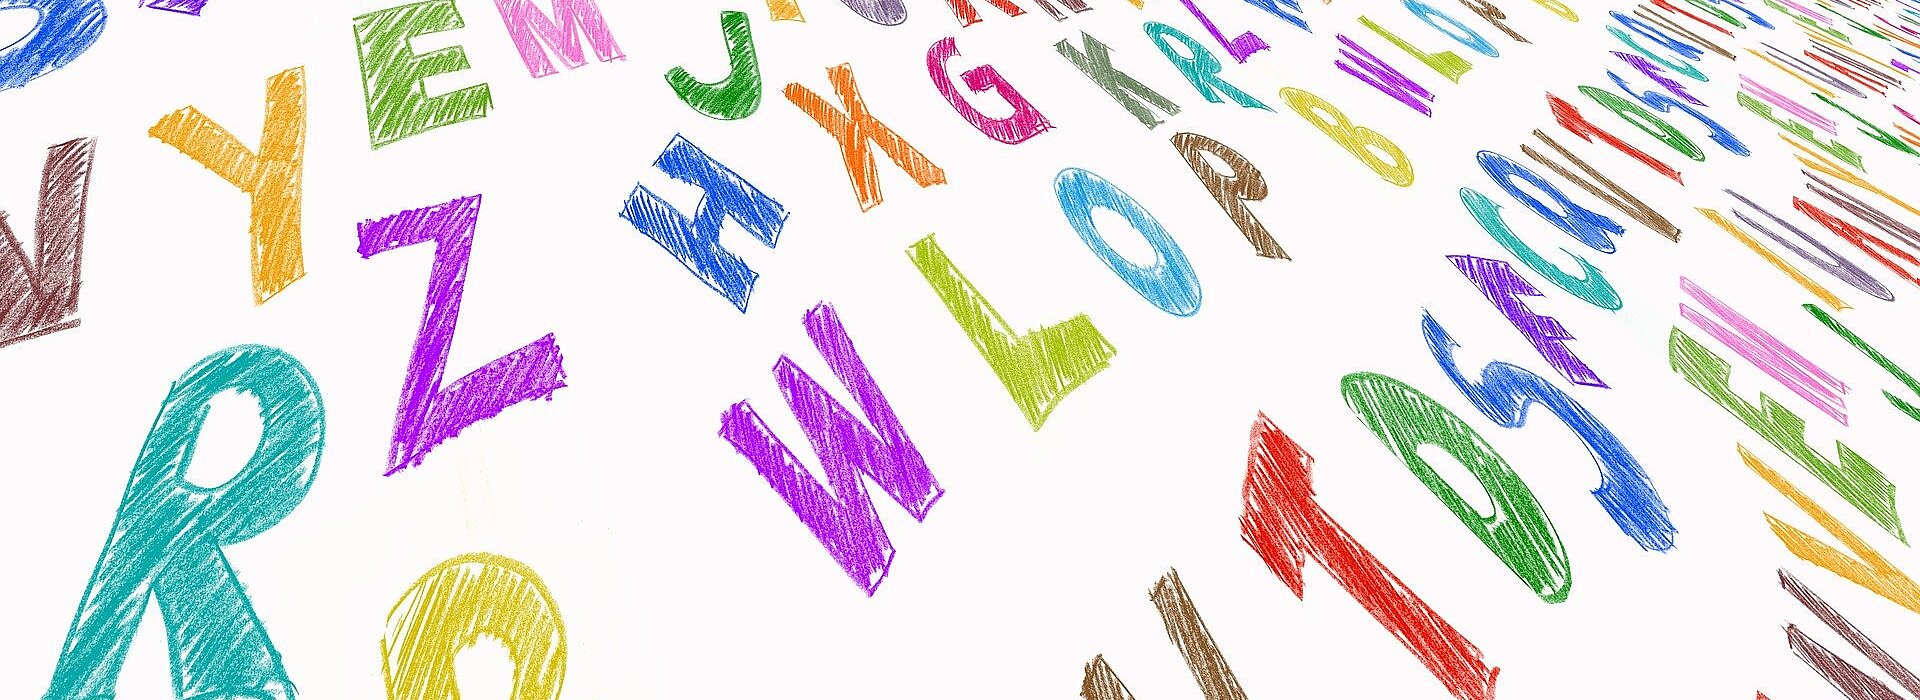 Diversas letras do alfabeto estão espelhadas pela foto. Elas têm diferentes cores e formatos.s